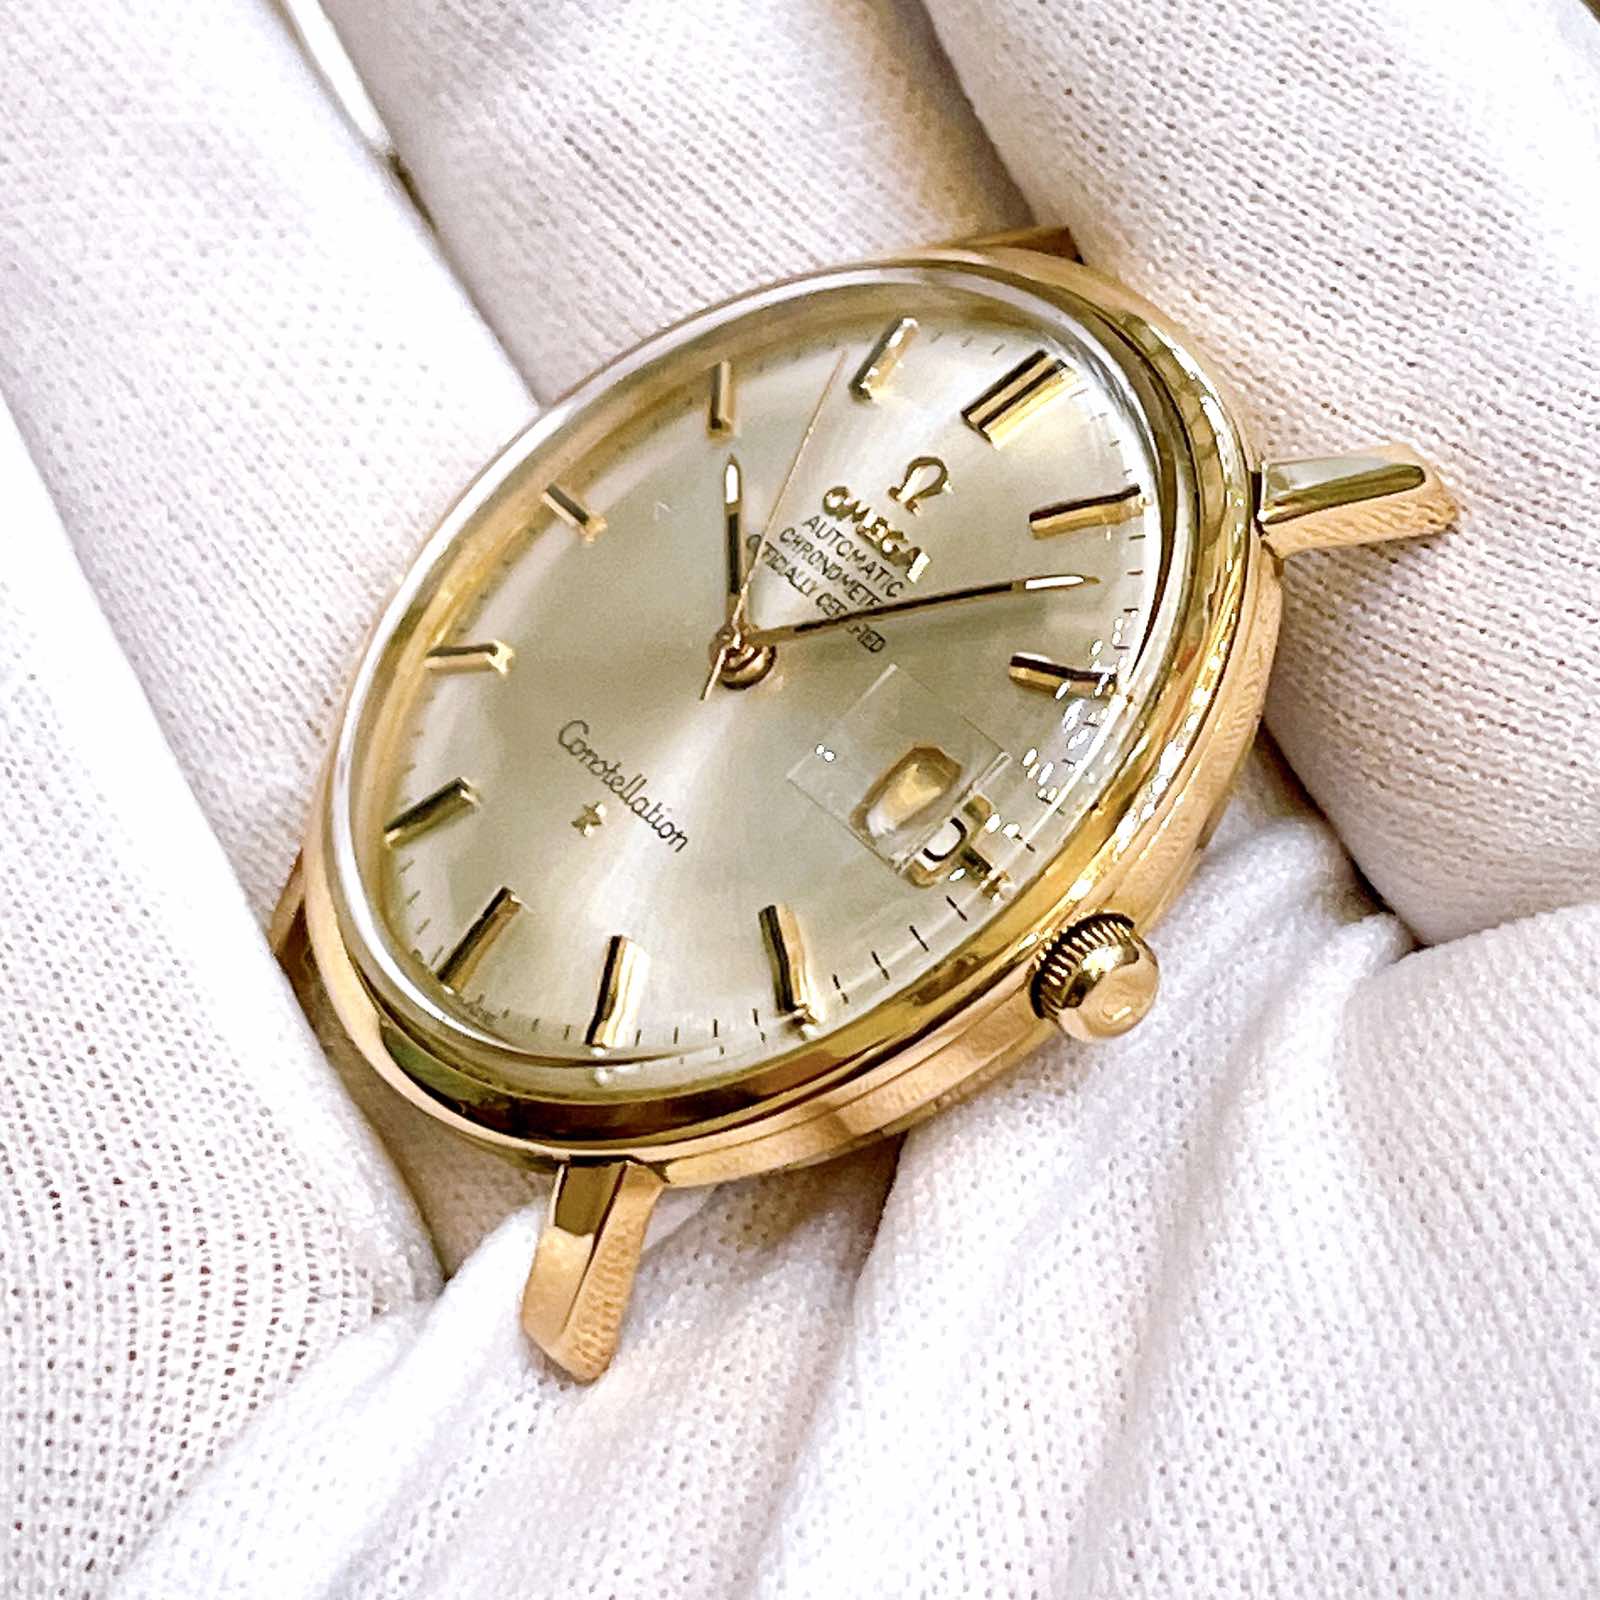 Đồng hồ cổ Omega Constellation Automatic vàng đúc đặc 18k nguyên khối chính hãng thụy Sĩ 